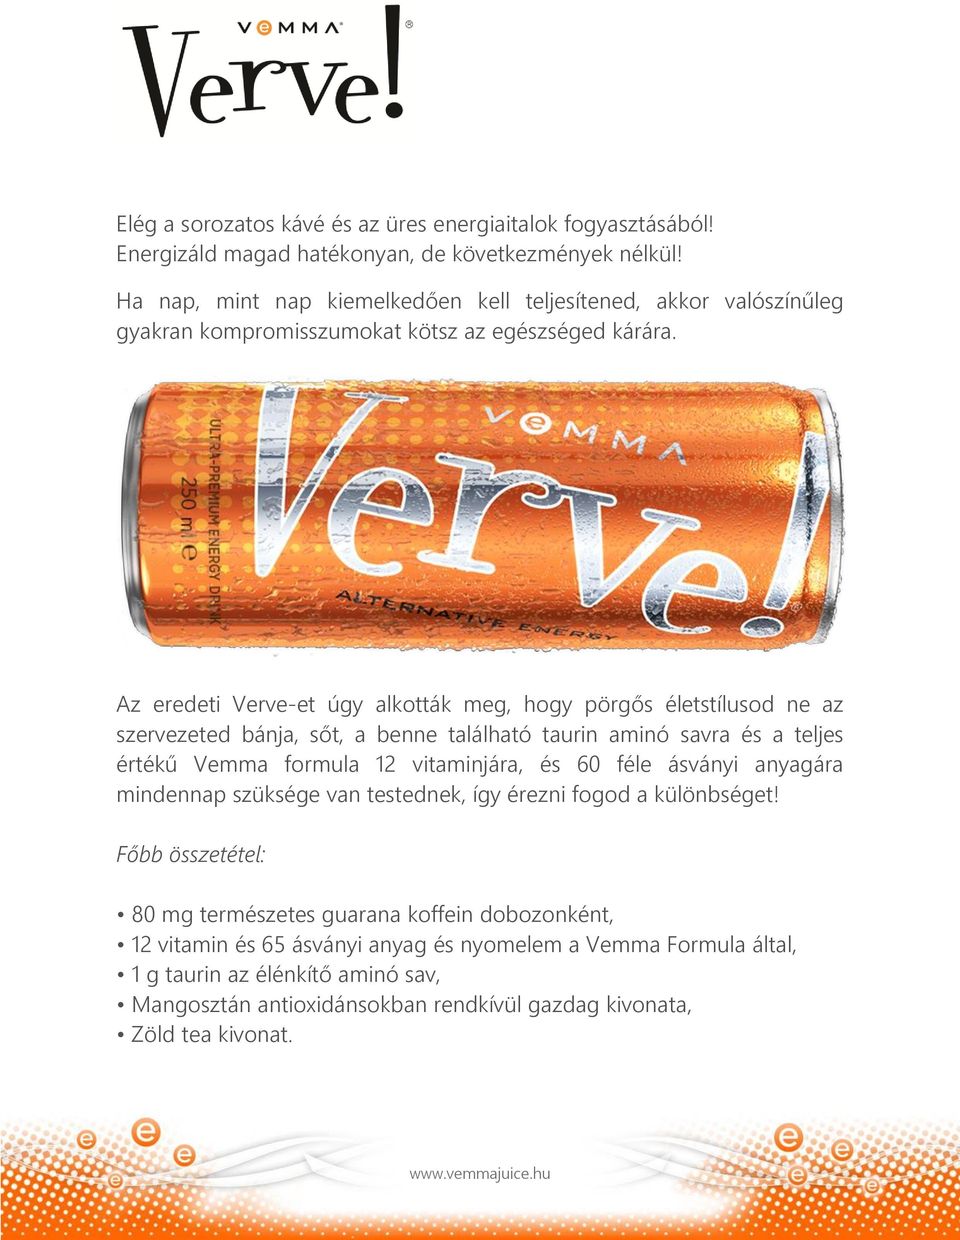 Az eredeti Verve-et úgy alkották meg, hogy pörgős életstílusod ne az szervezeted bánja, sőt, a benne található taurin aminó savra és a teljes értékű Vemma formula 12 vitaminjára, és